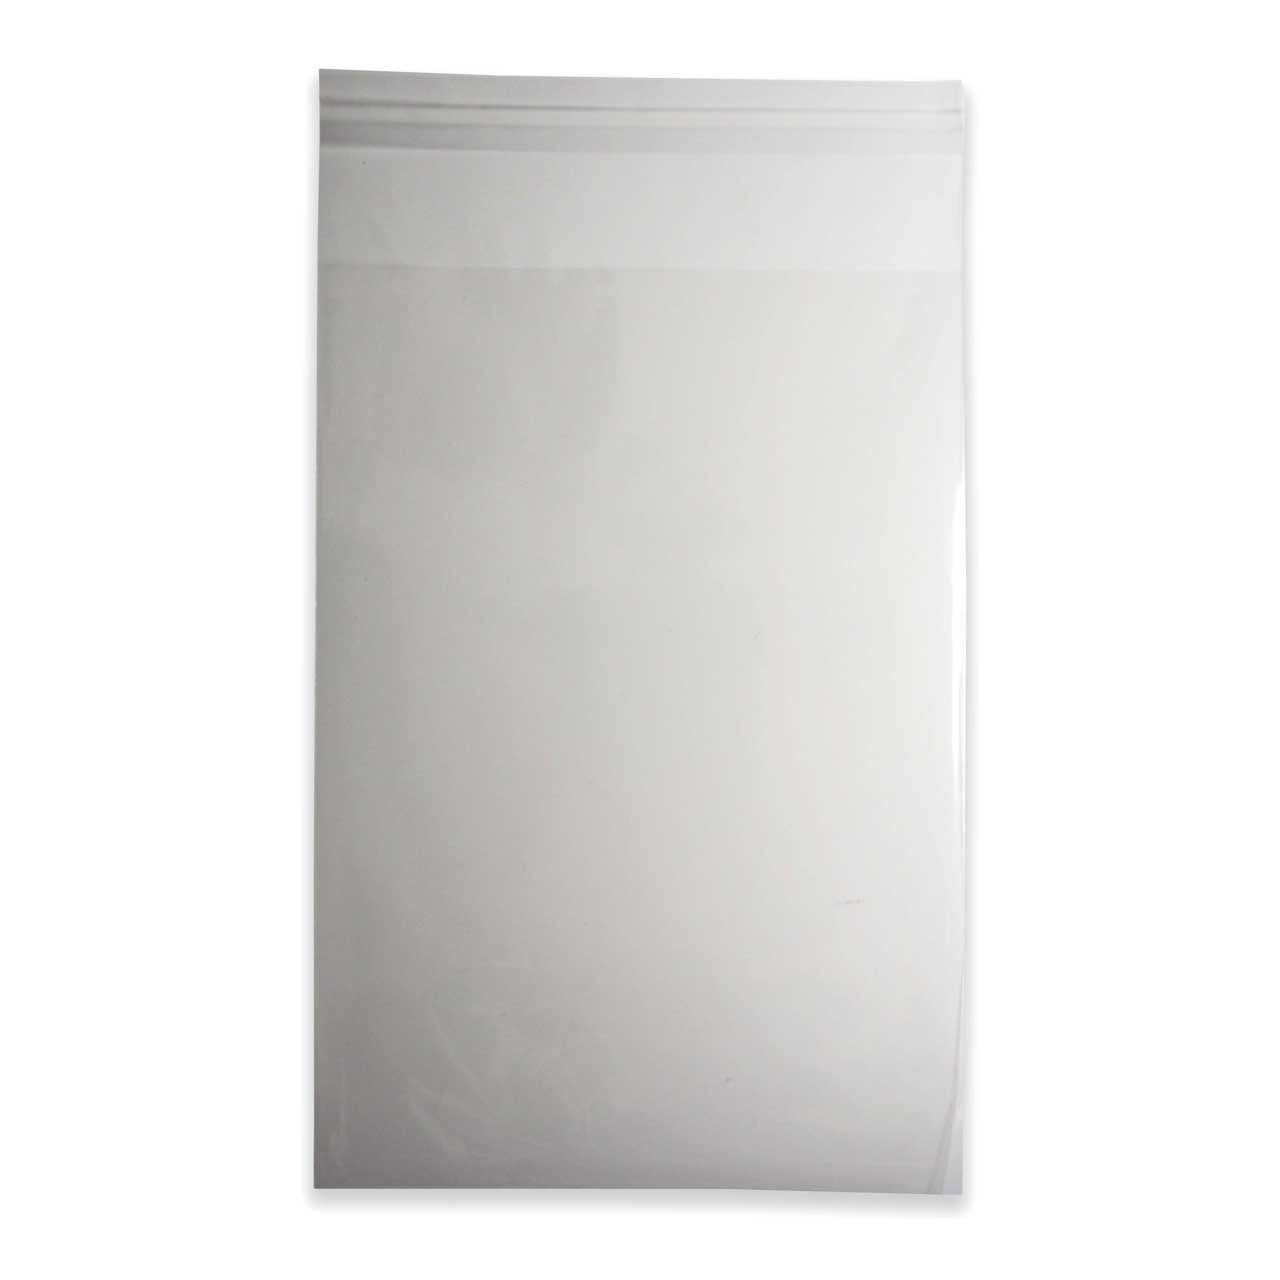 Self-adhesive Plastic Bag, Plastic Cellophane Bags